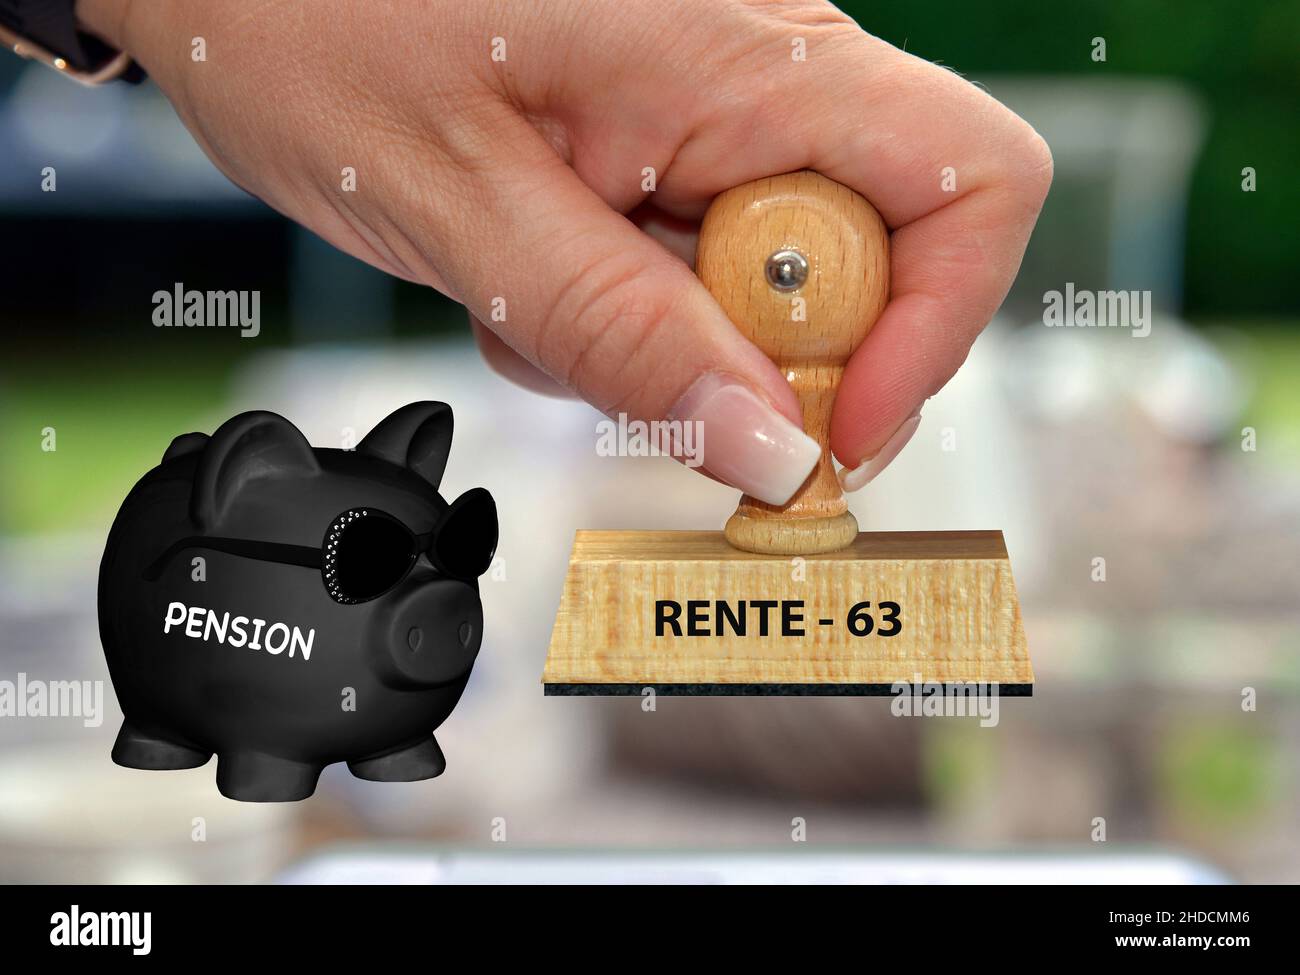 Sparschwein, Sparen, Vorsorge, Aufdruck: Rente mit 63, Hand, Stempel, Holzstempel, Euro, Stock Photo